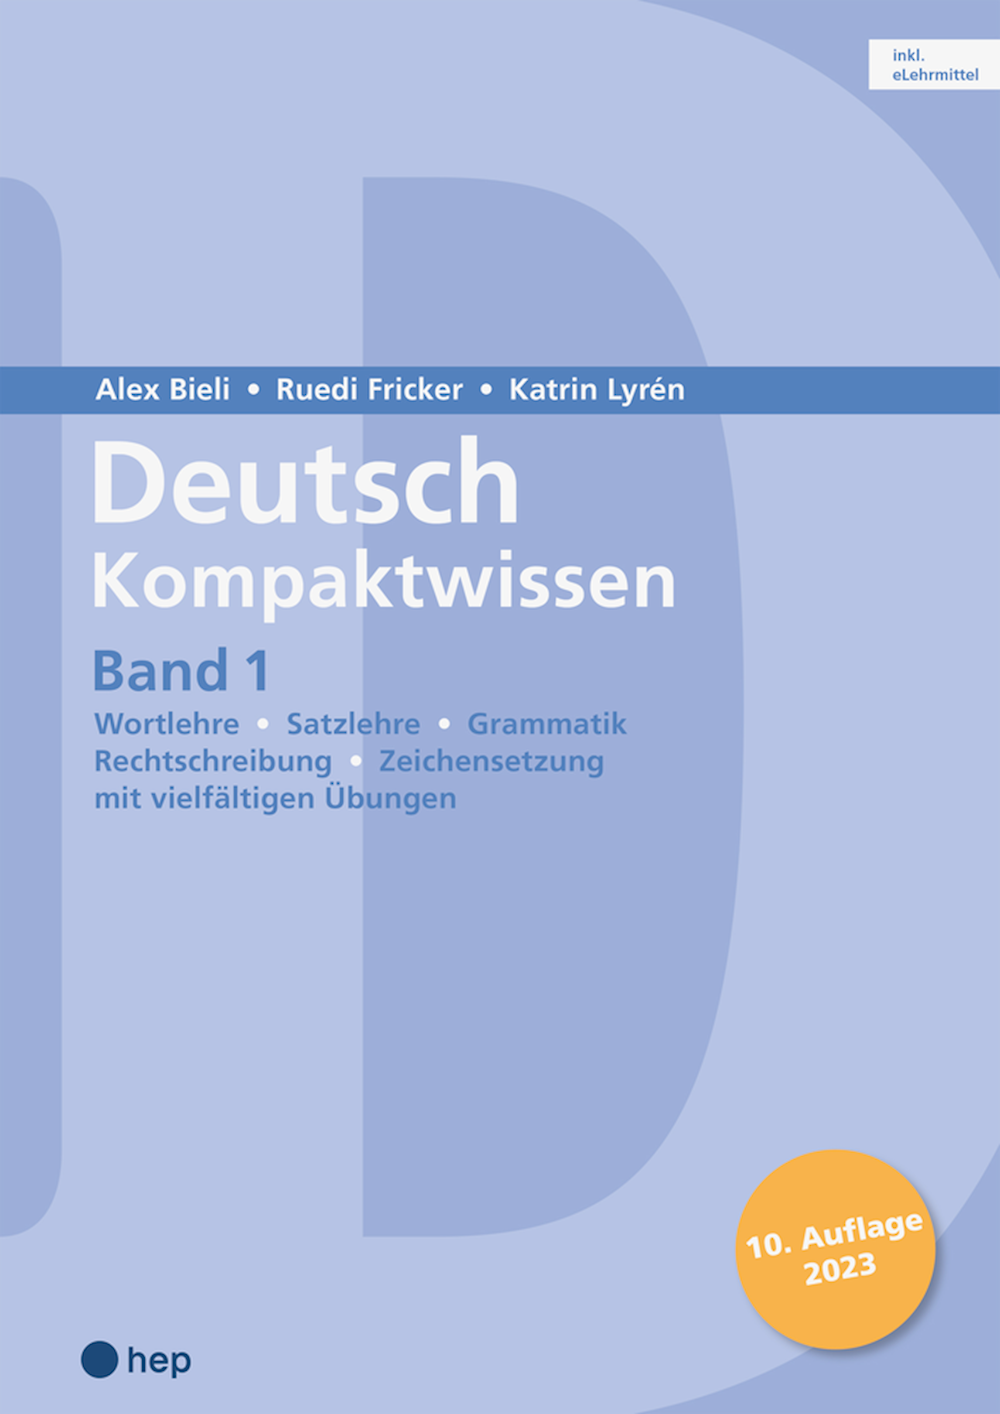 Deutsch Kompaktwissen Band 1: Arbeitsbuch inkl. eL